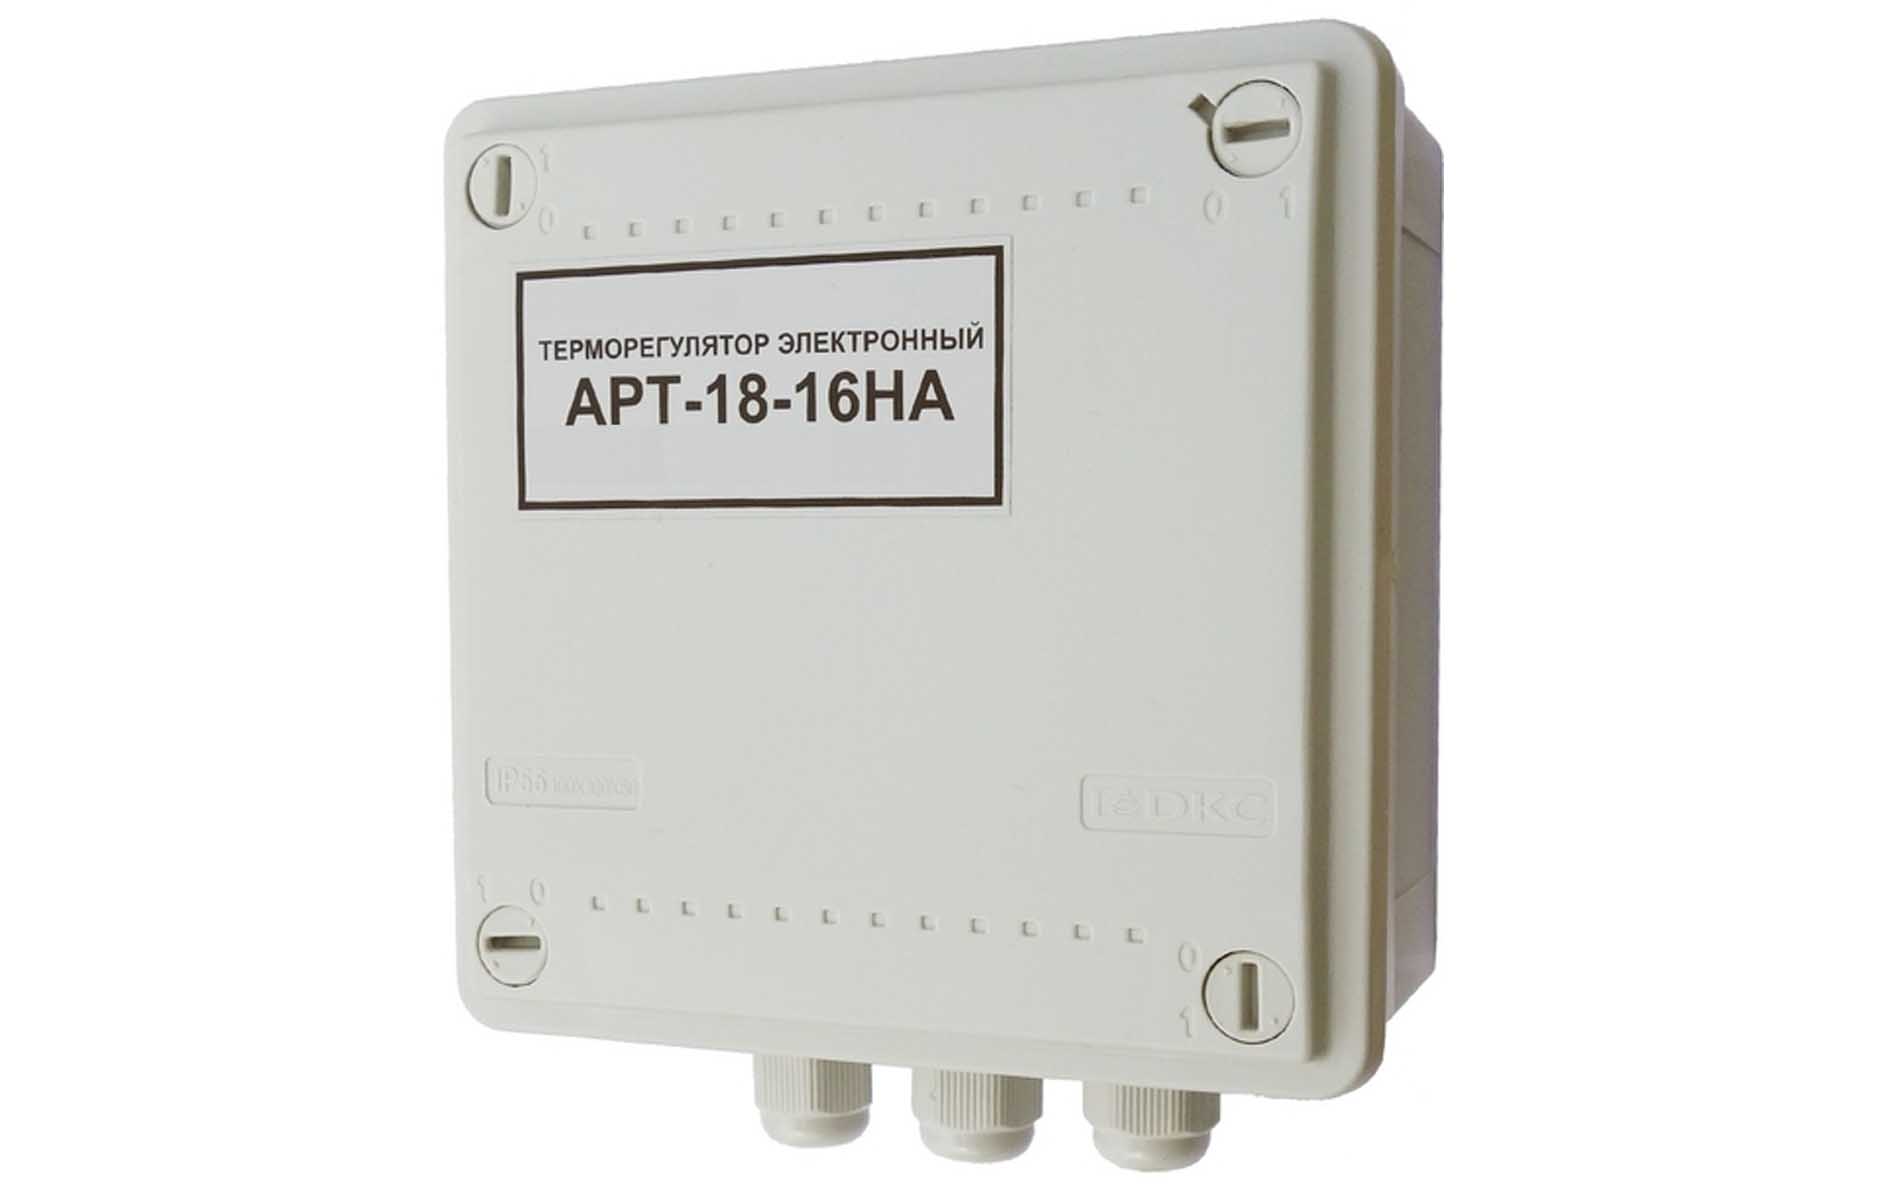 Терморегулятор/термостат для защиты труб от замерзания АРТ-18-16НА IP56